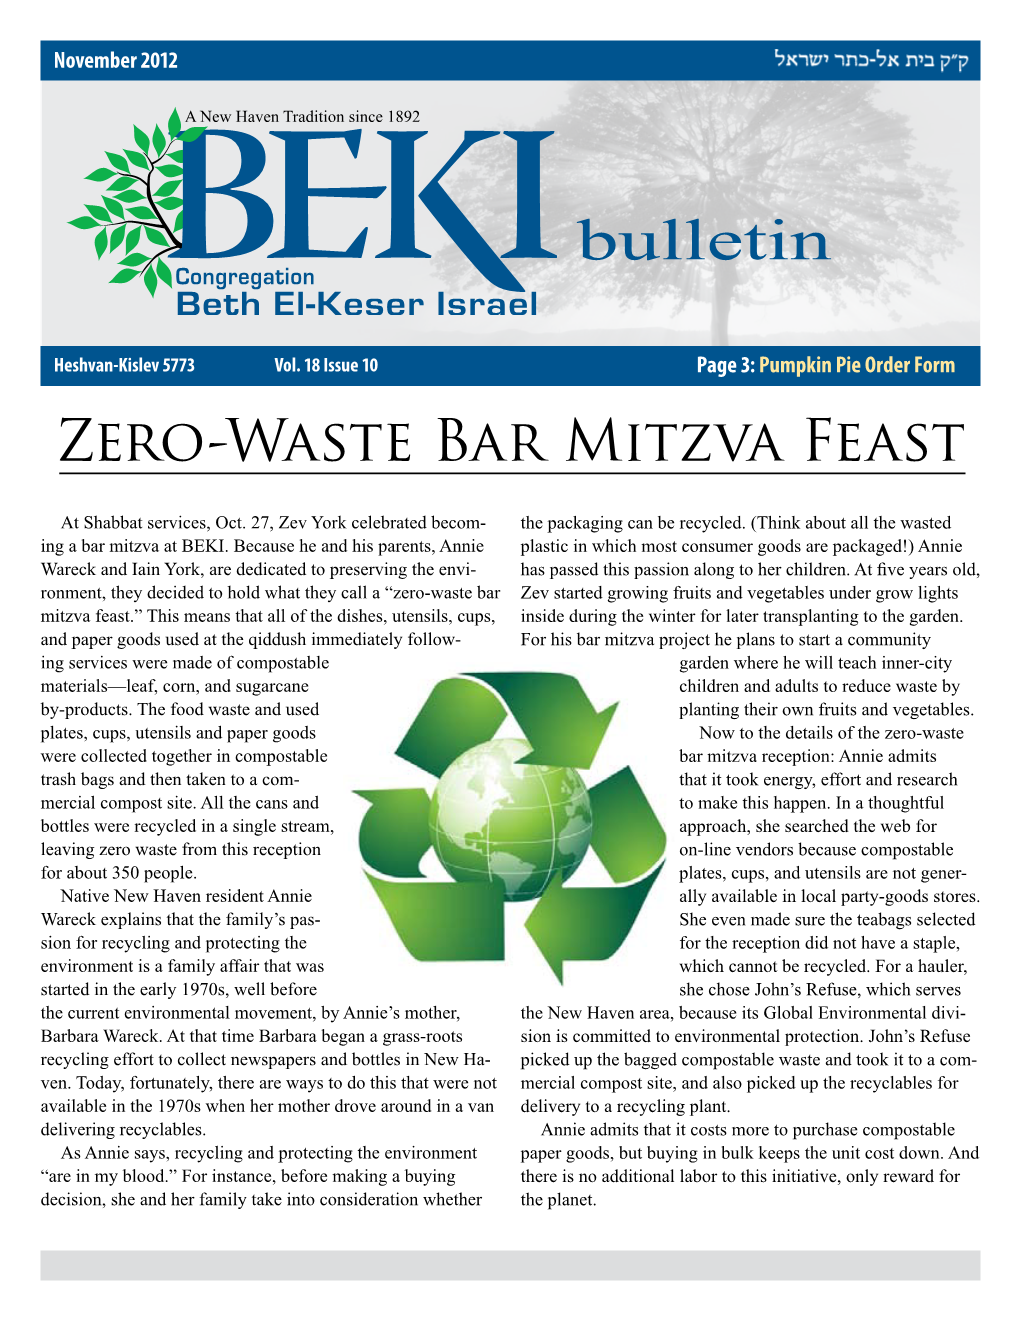 BEKI Bulletin November 2012